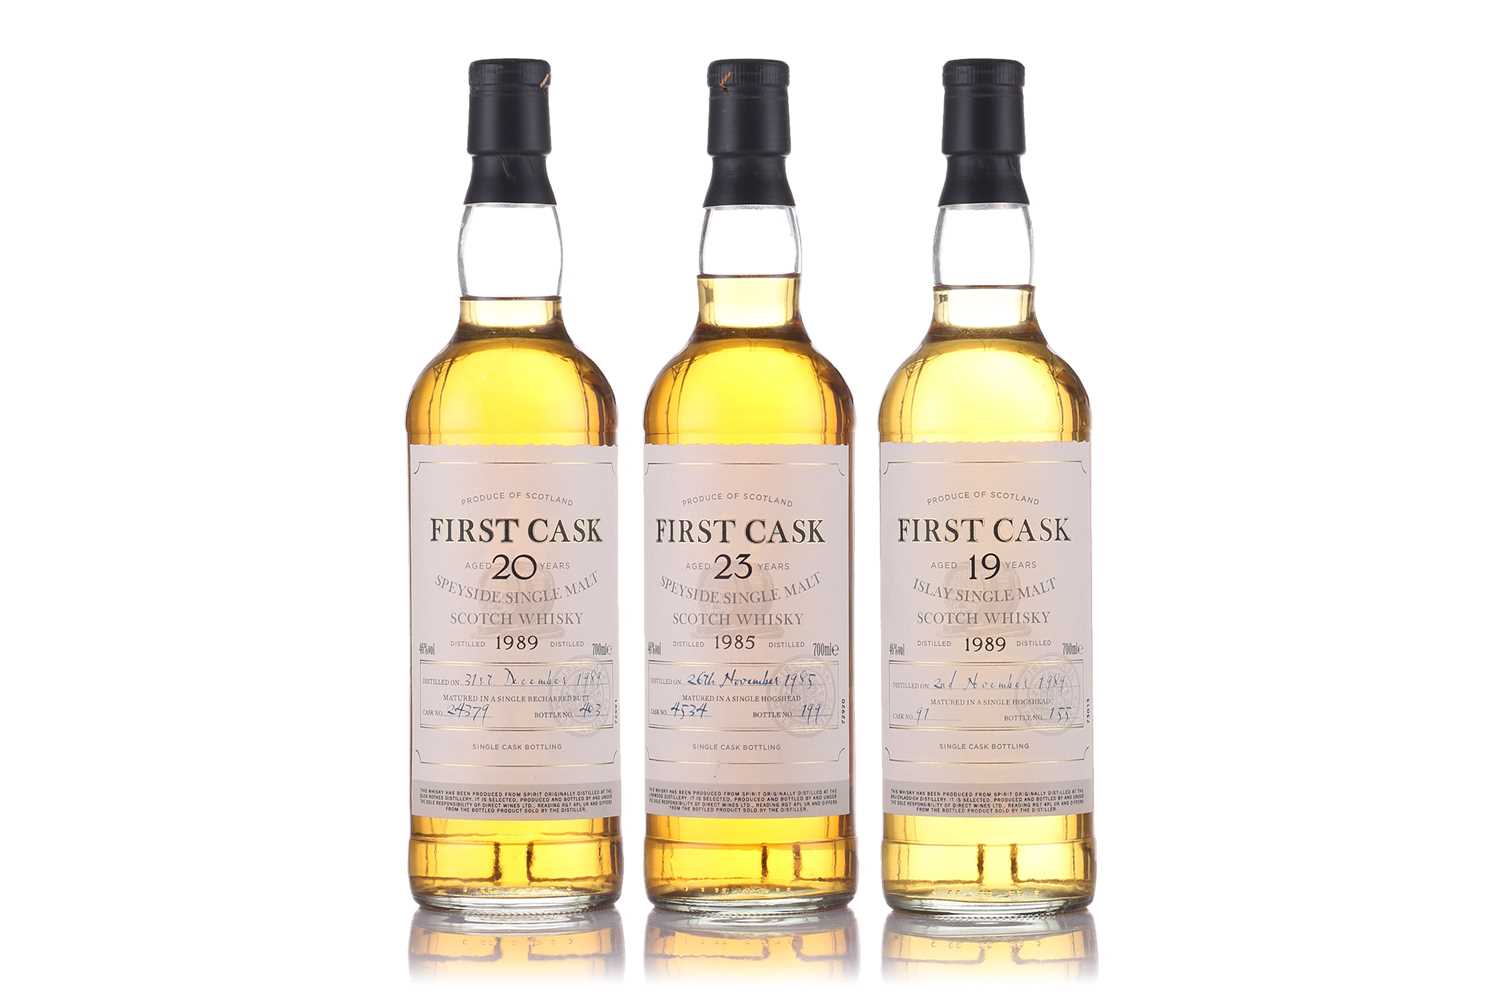 A bottle of First Cask Speyside Single Malt Scotch Whisky, 1989, Cask No. 24379, Bottle No. 403 (